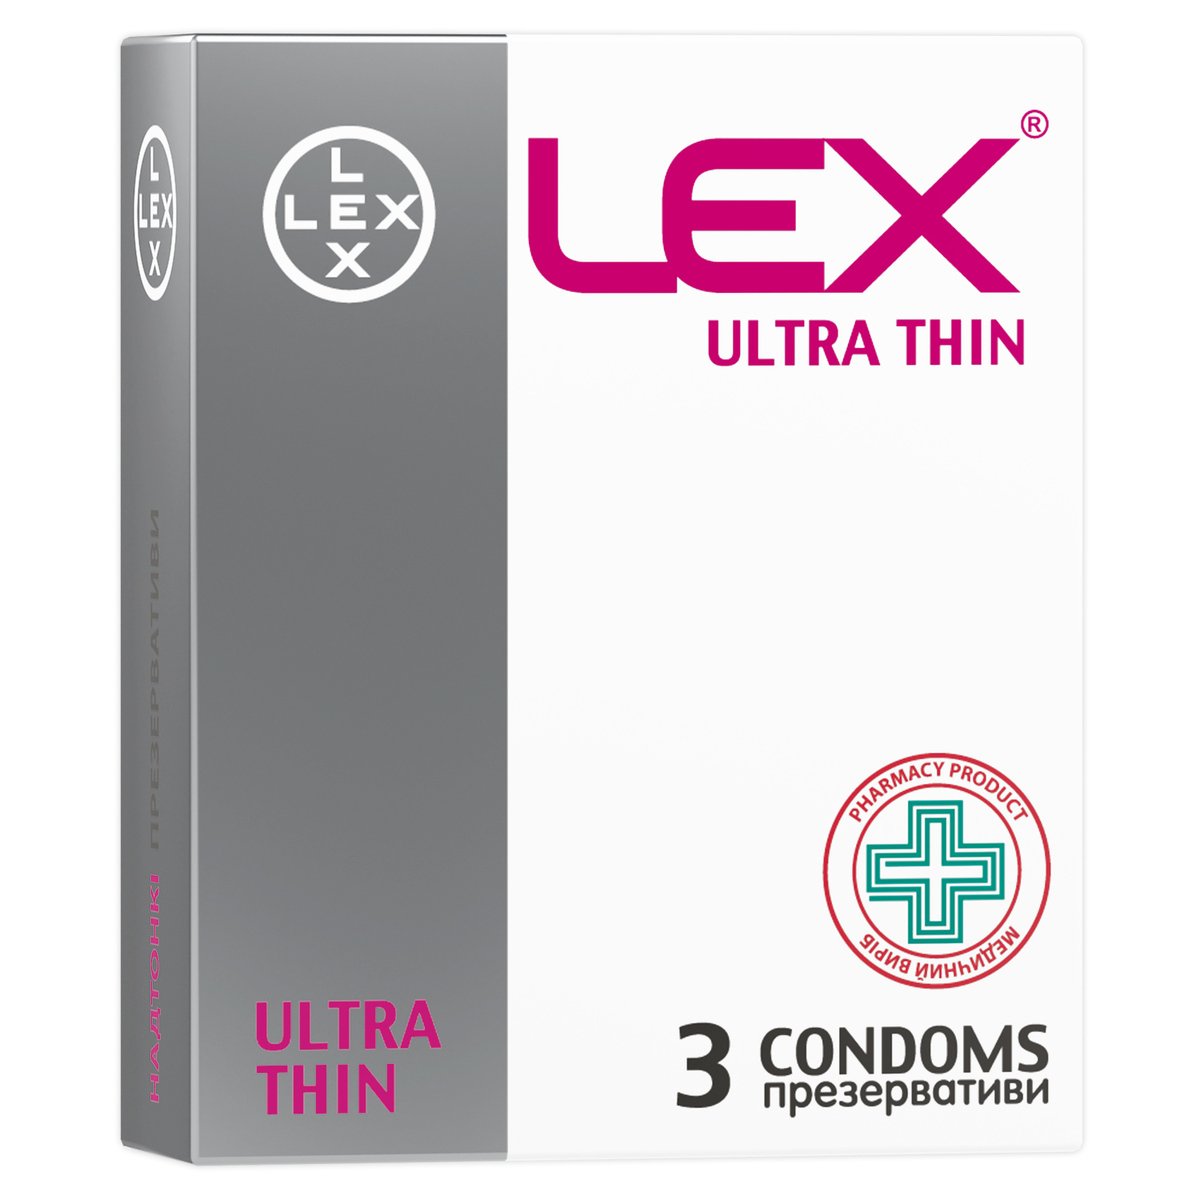 Презервативы Lex Ultra thin ультратонкие, 3 шт. (LEX/Thin/3) - фото 1